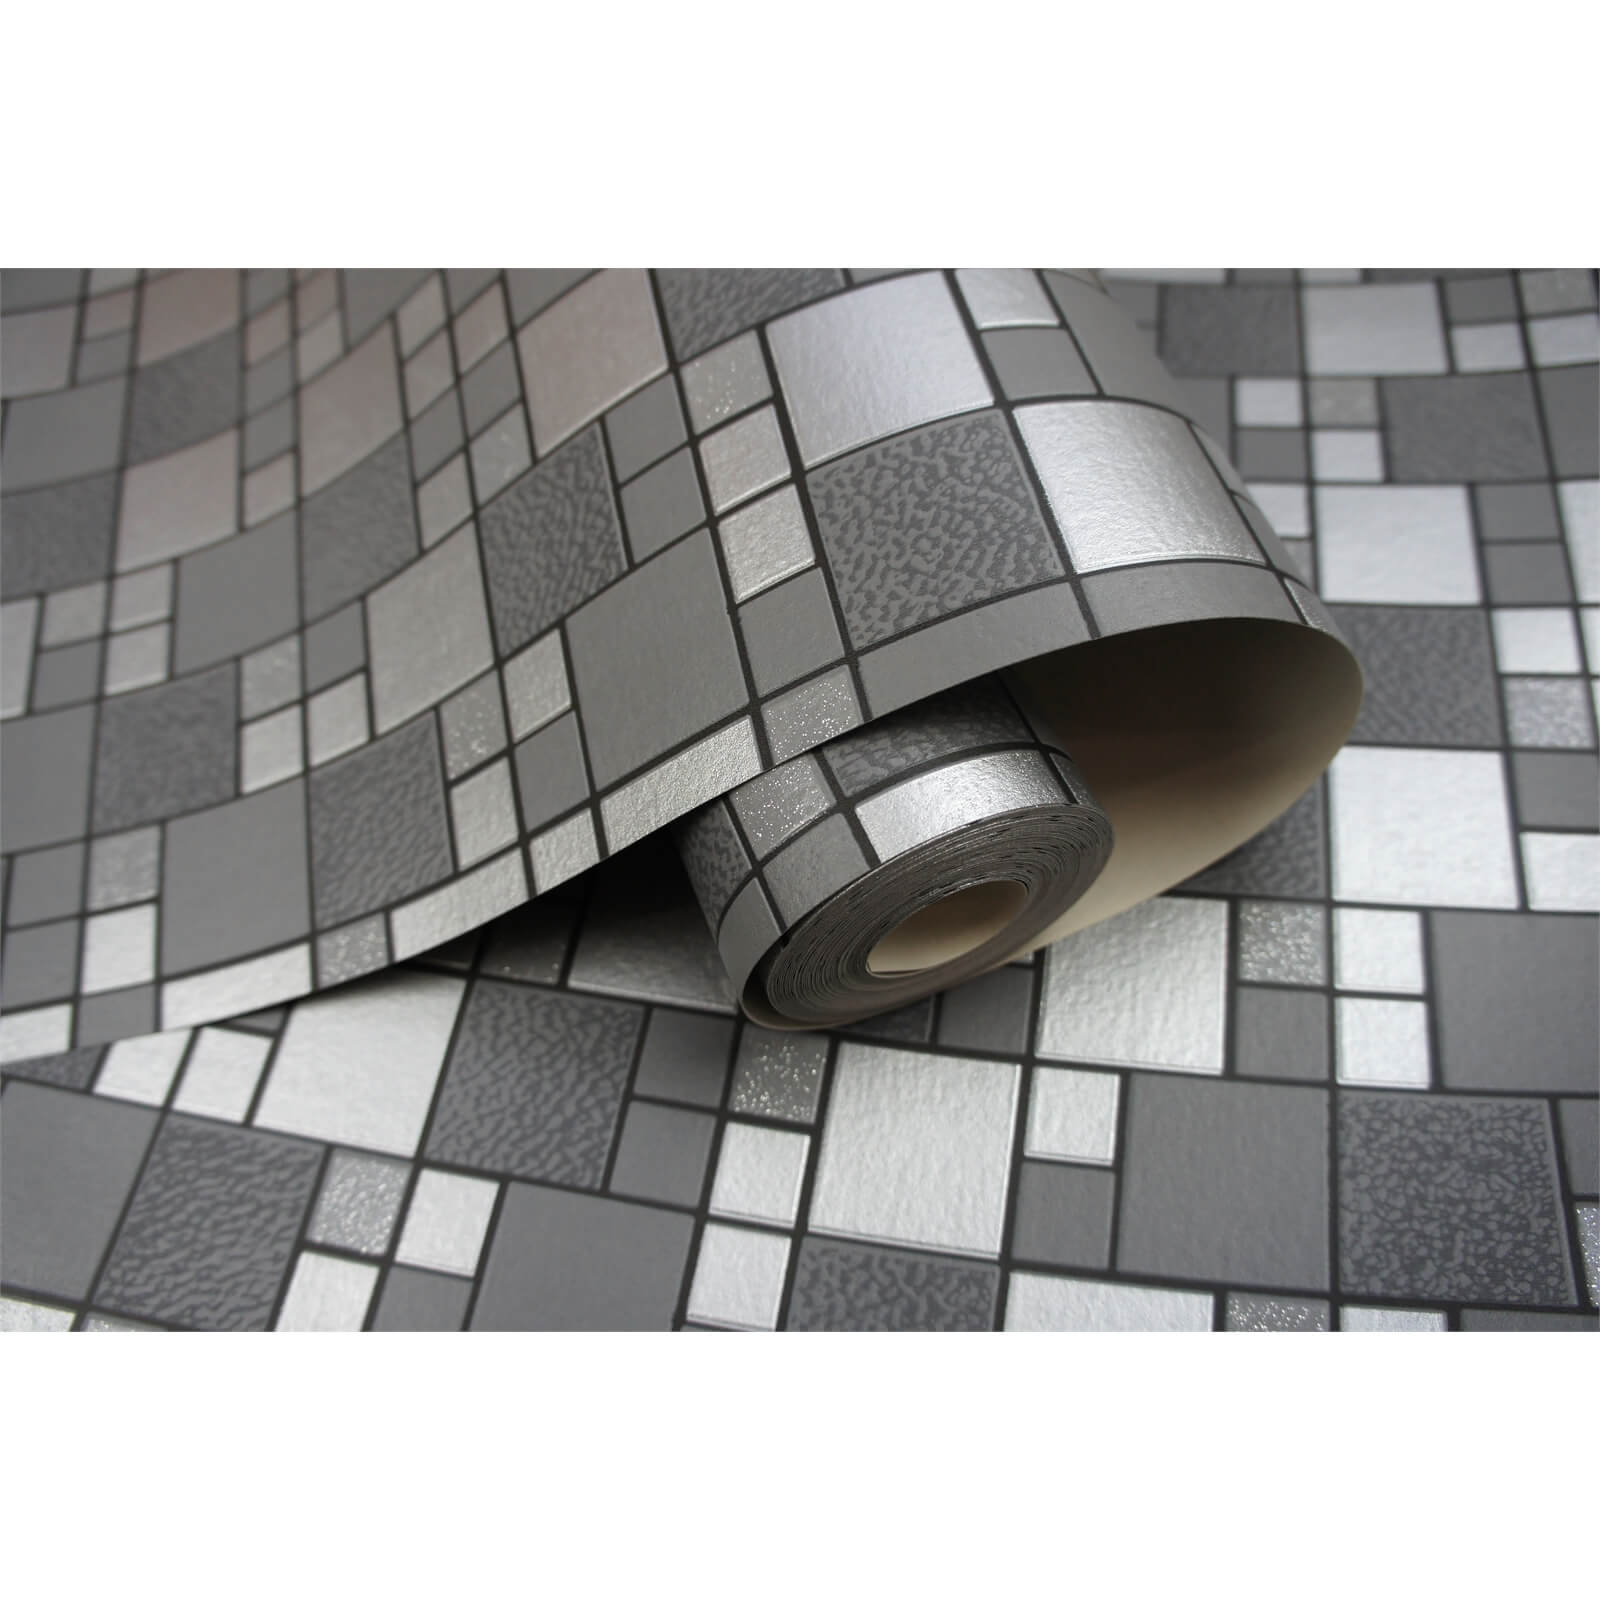 Holden Decor Trivola Tile Embossed Metallic Glitter Charcoal Wallpaper